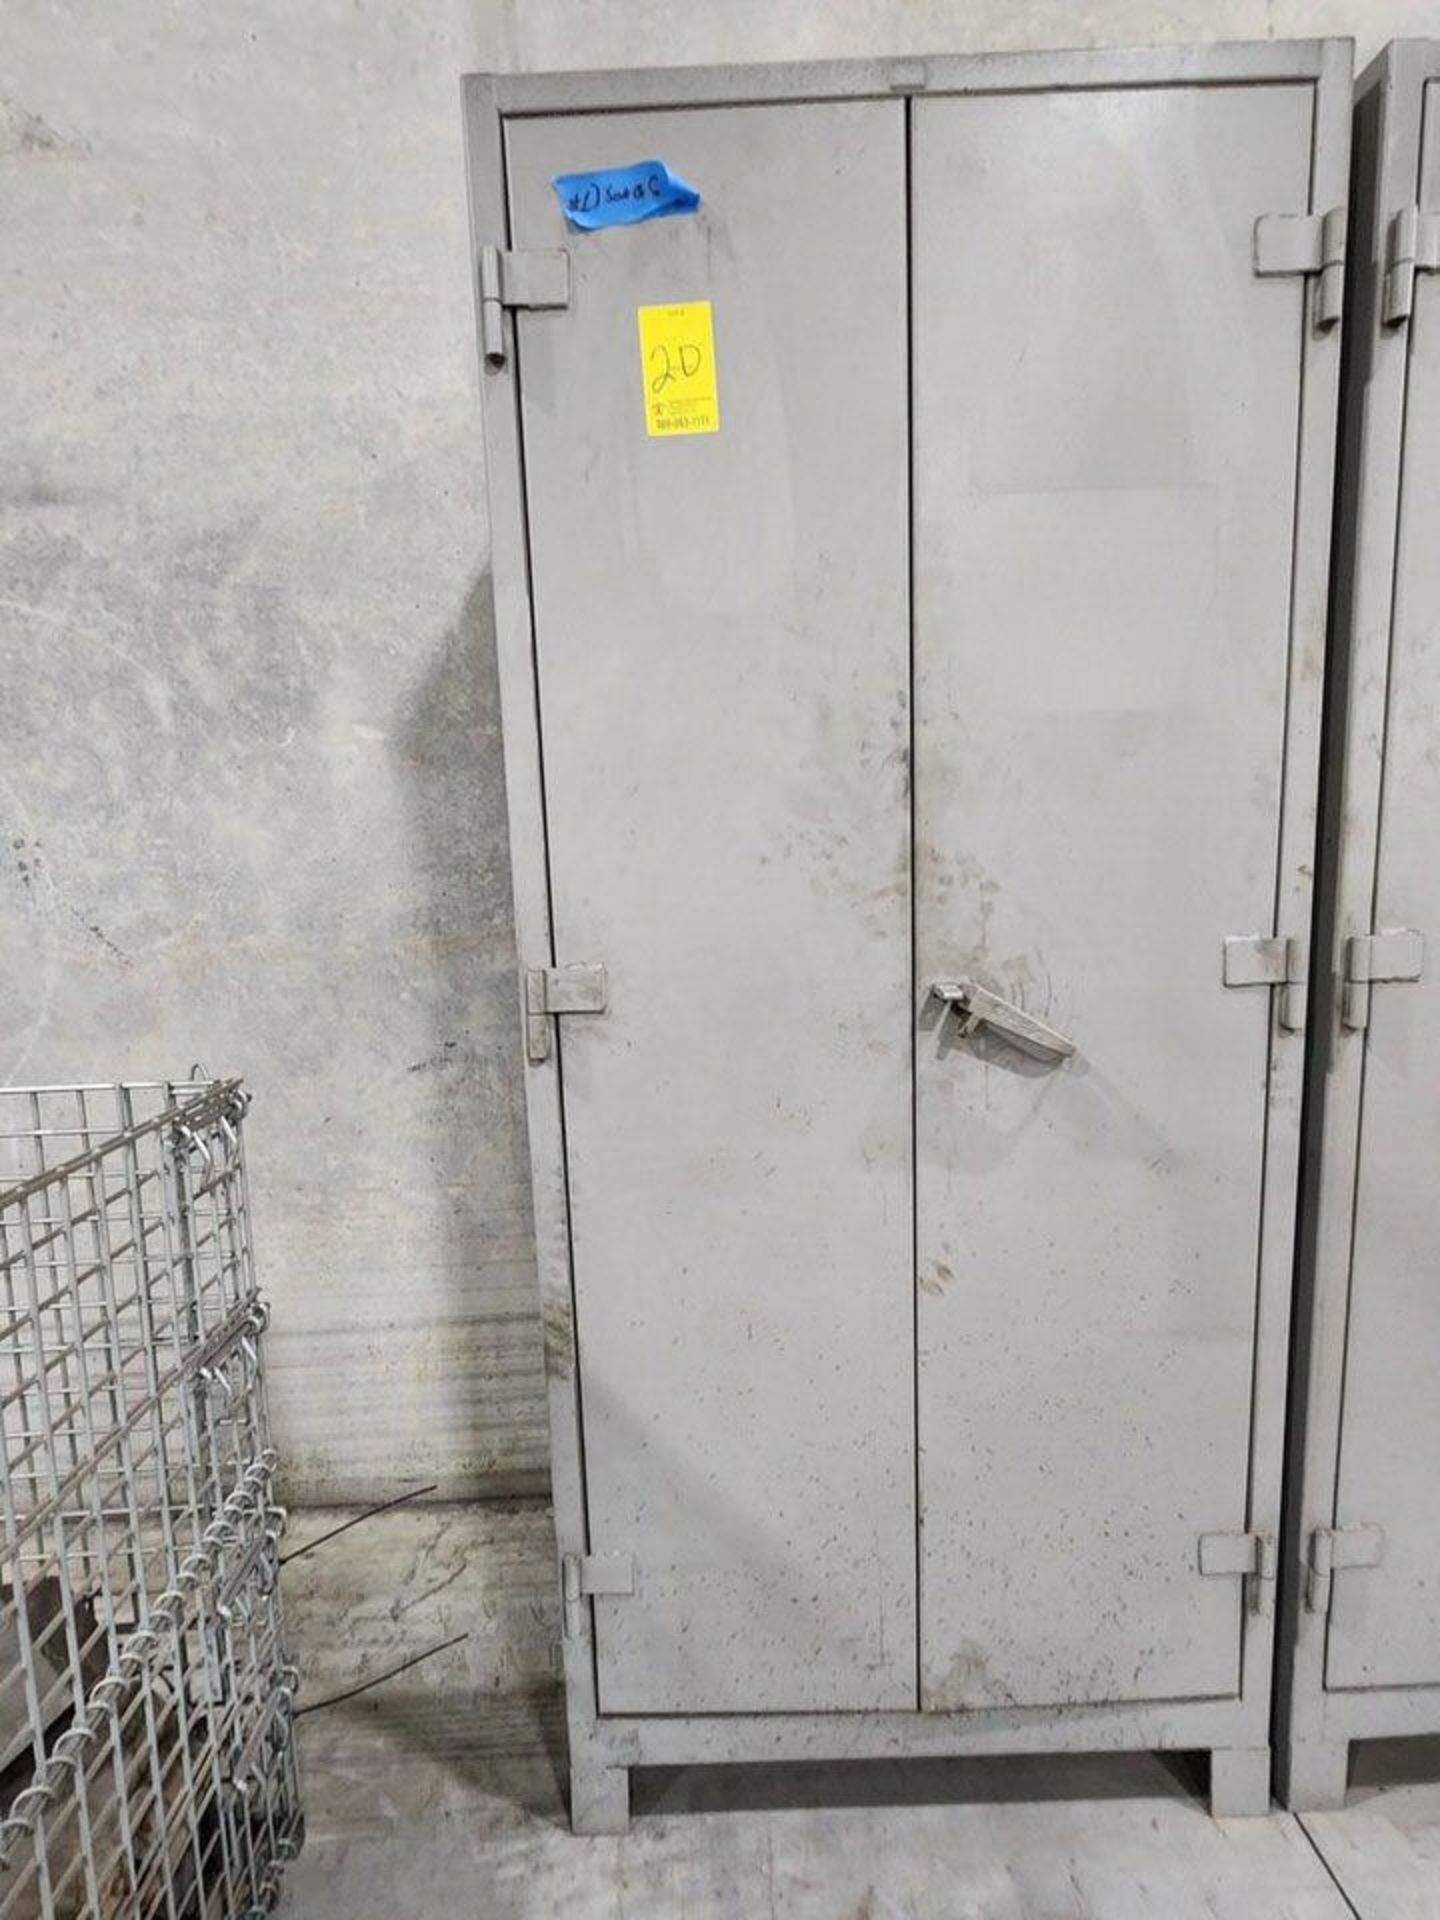 Lyon Metal 2-Door Material Cabinets 36" x 24" x 82"